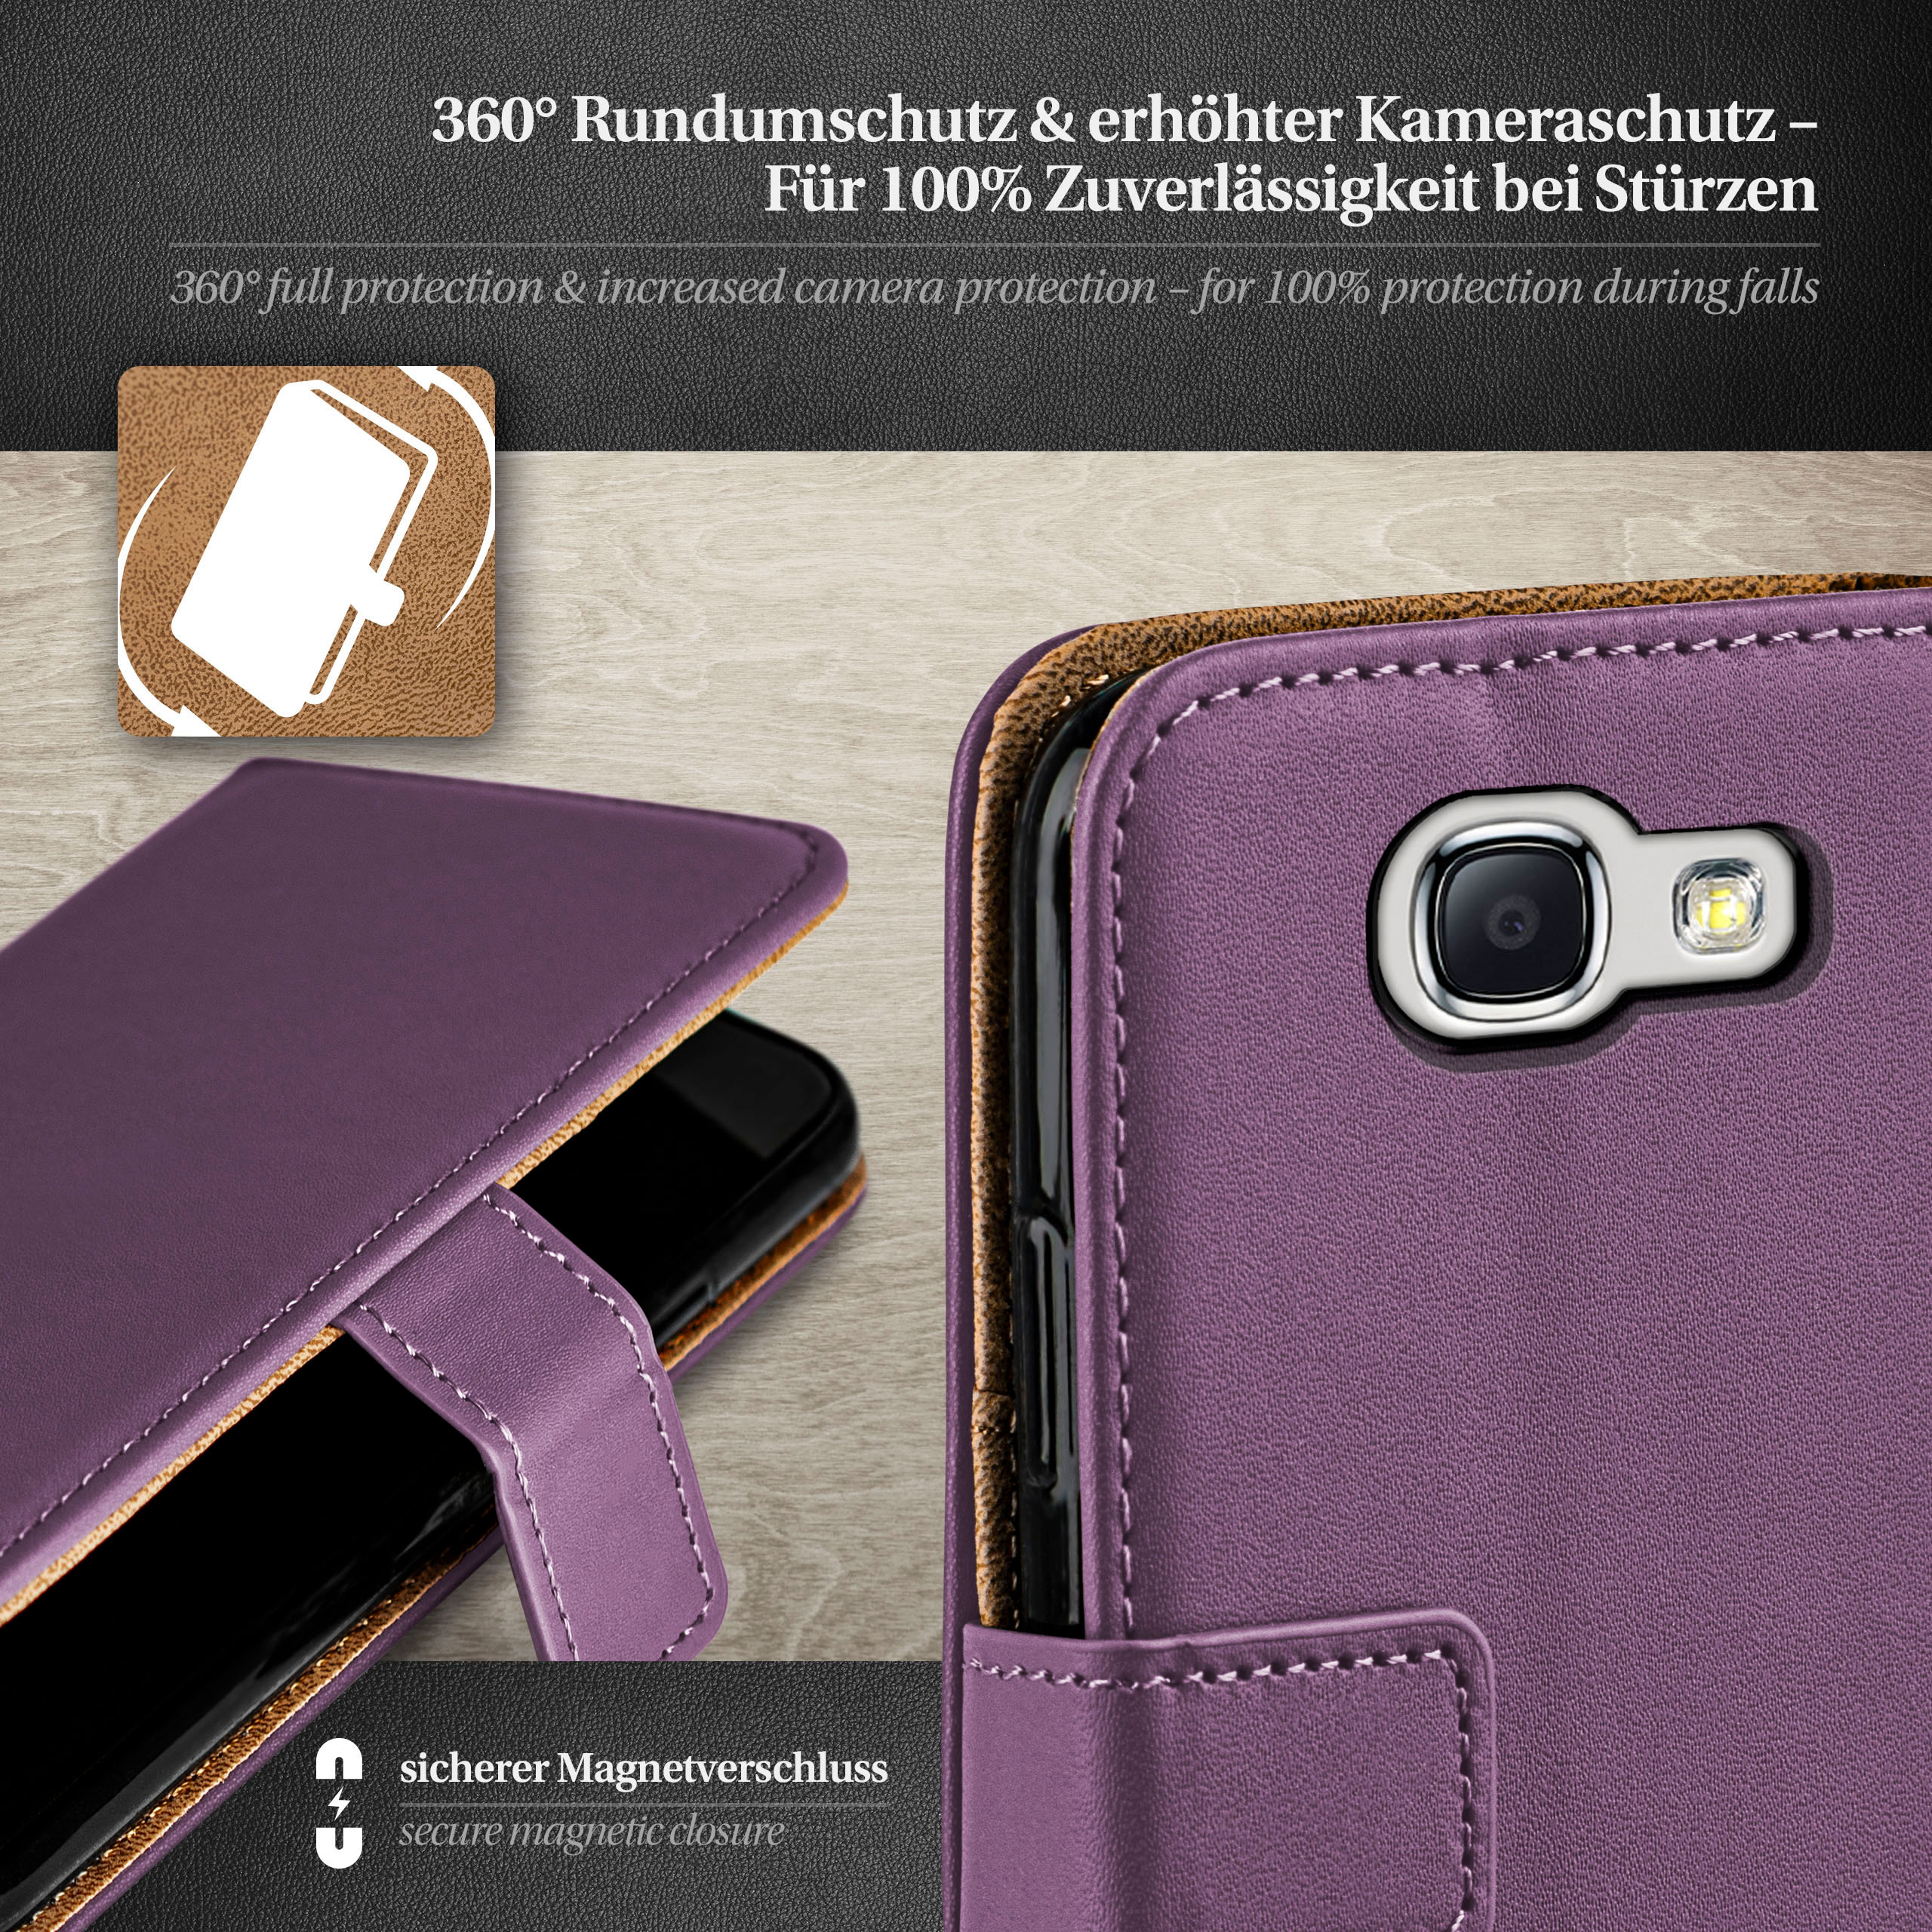 MOEX Book Case, Galaxy Samsung, Indigo-Violet Bookcover, 2, Note